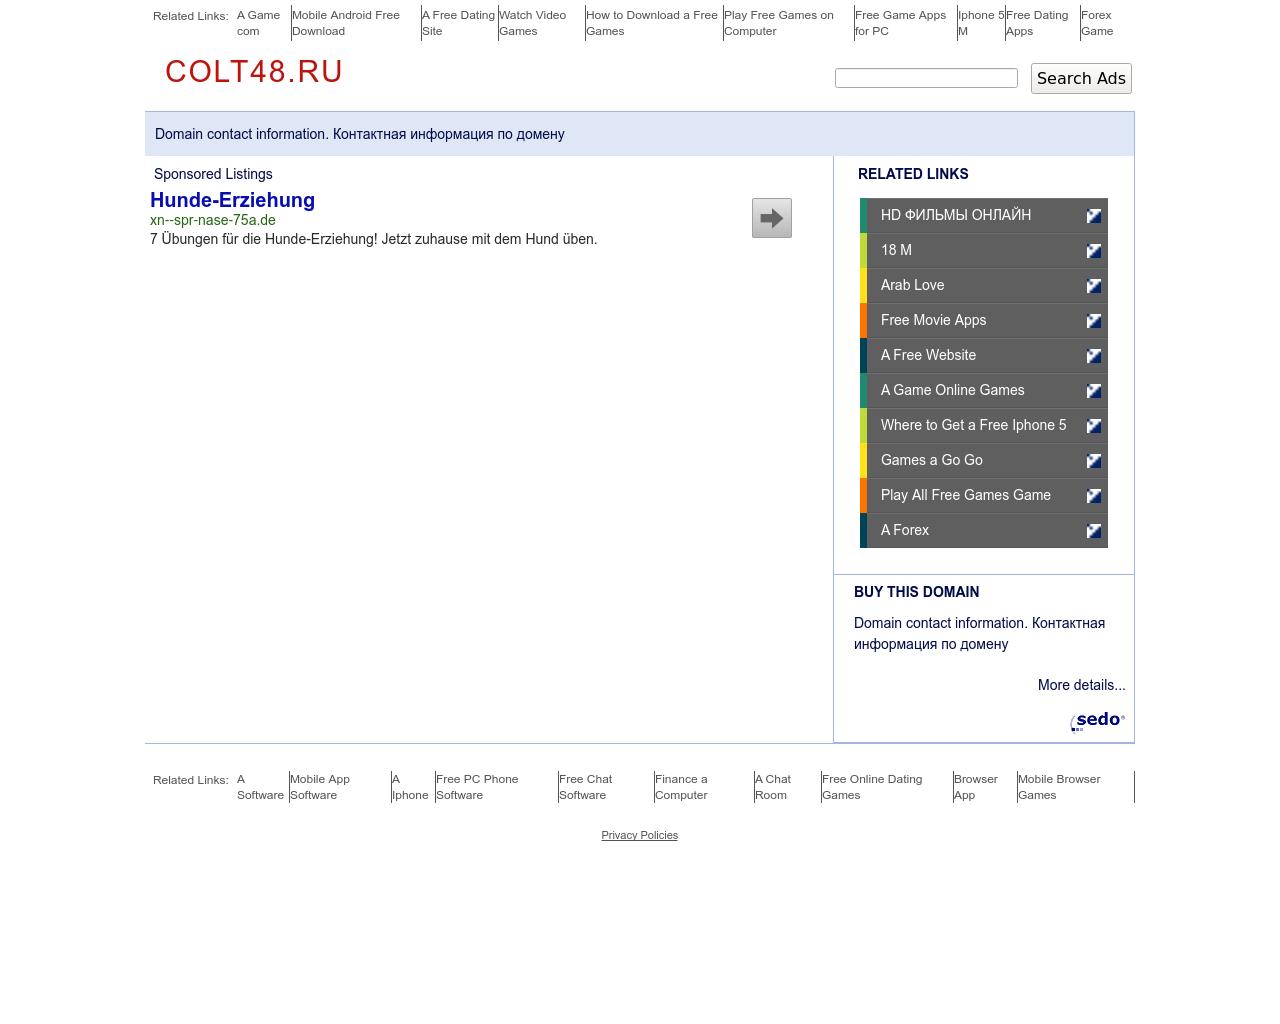 Изображение сайта colt48.ru в разрешении 1280x1024